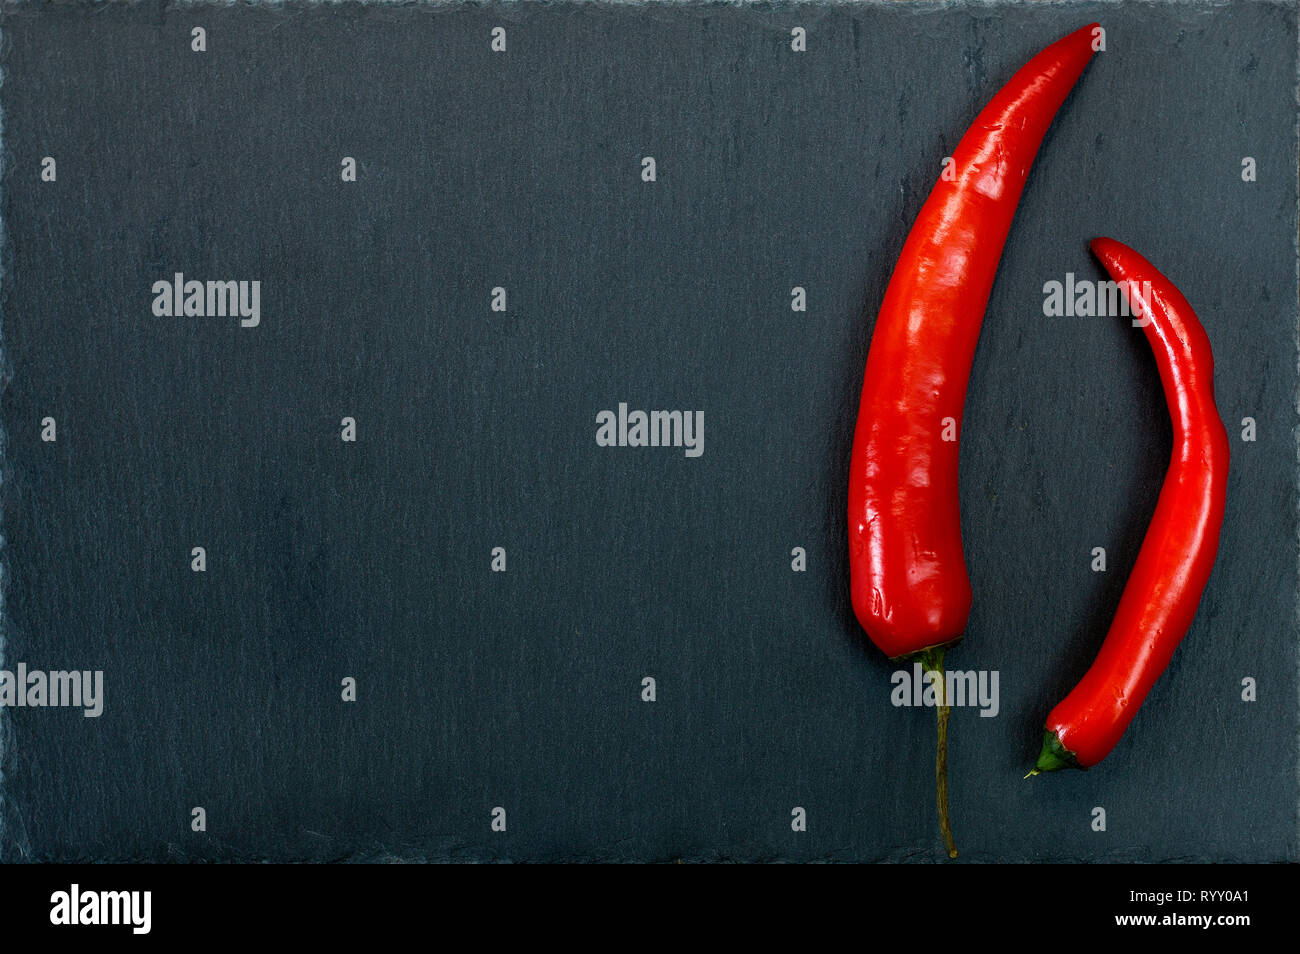 Red hot peppers sur plaque ardoise foncé avec copie espace. Fond texturé en pierre naturelle Banque D'Images